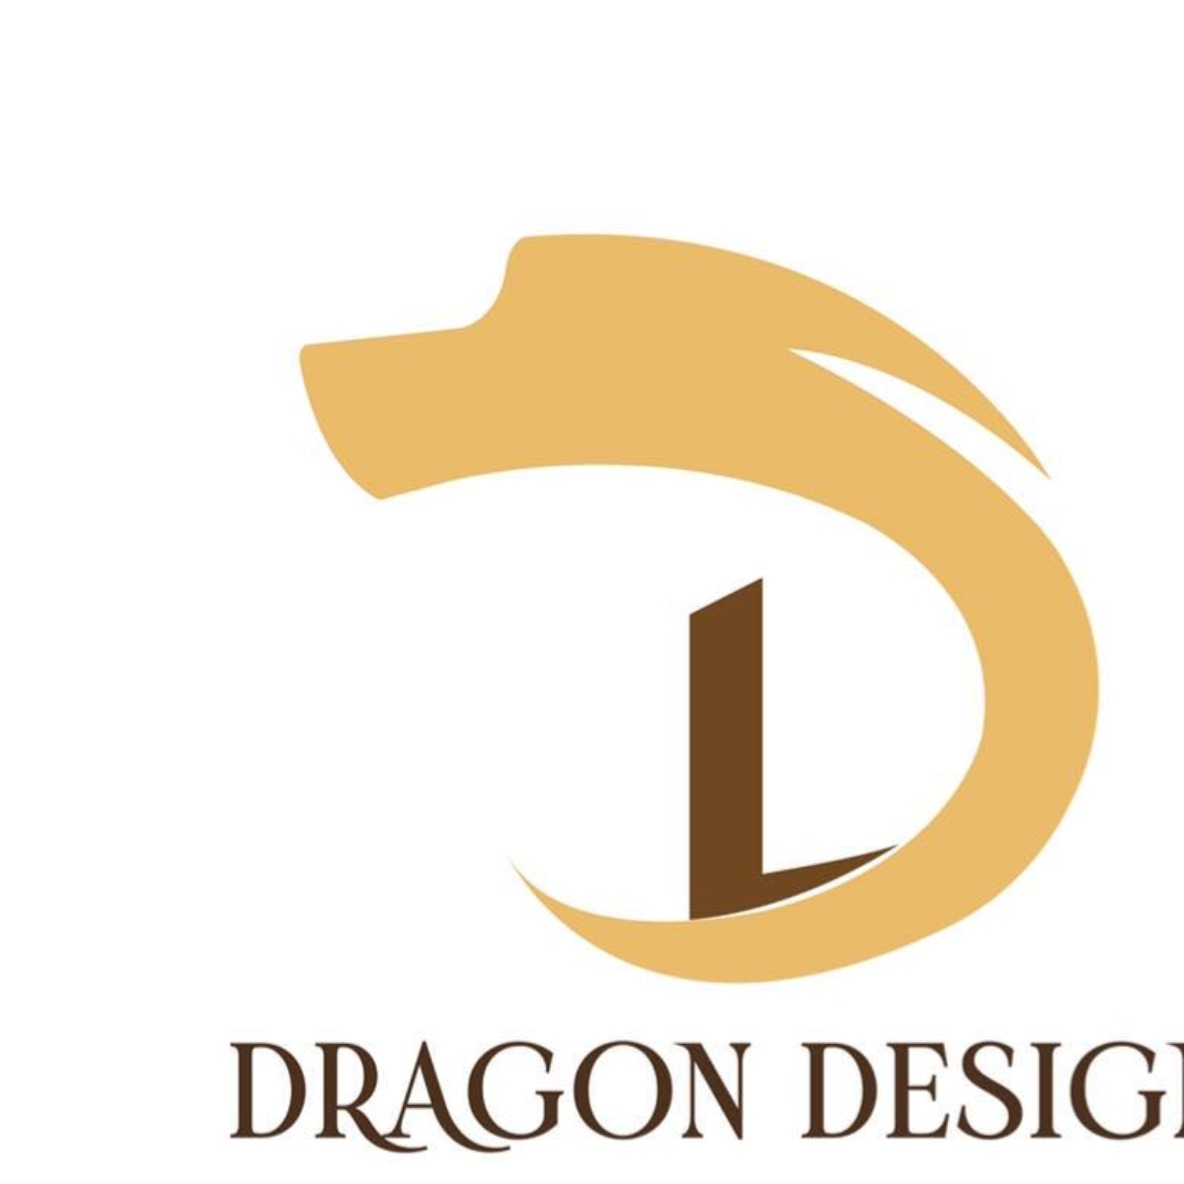 龍藝室內設計及裝飾工程有限公司